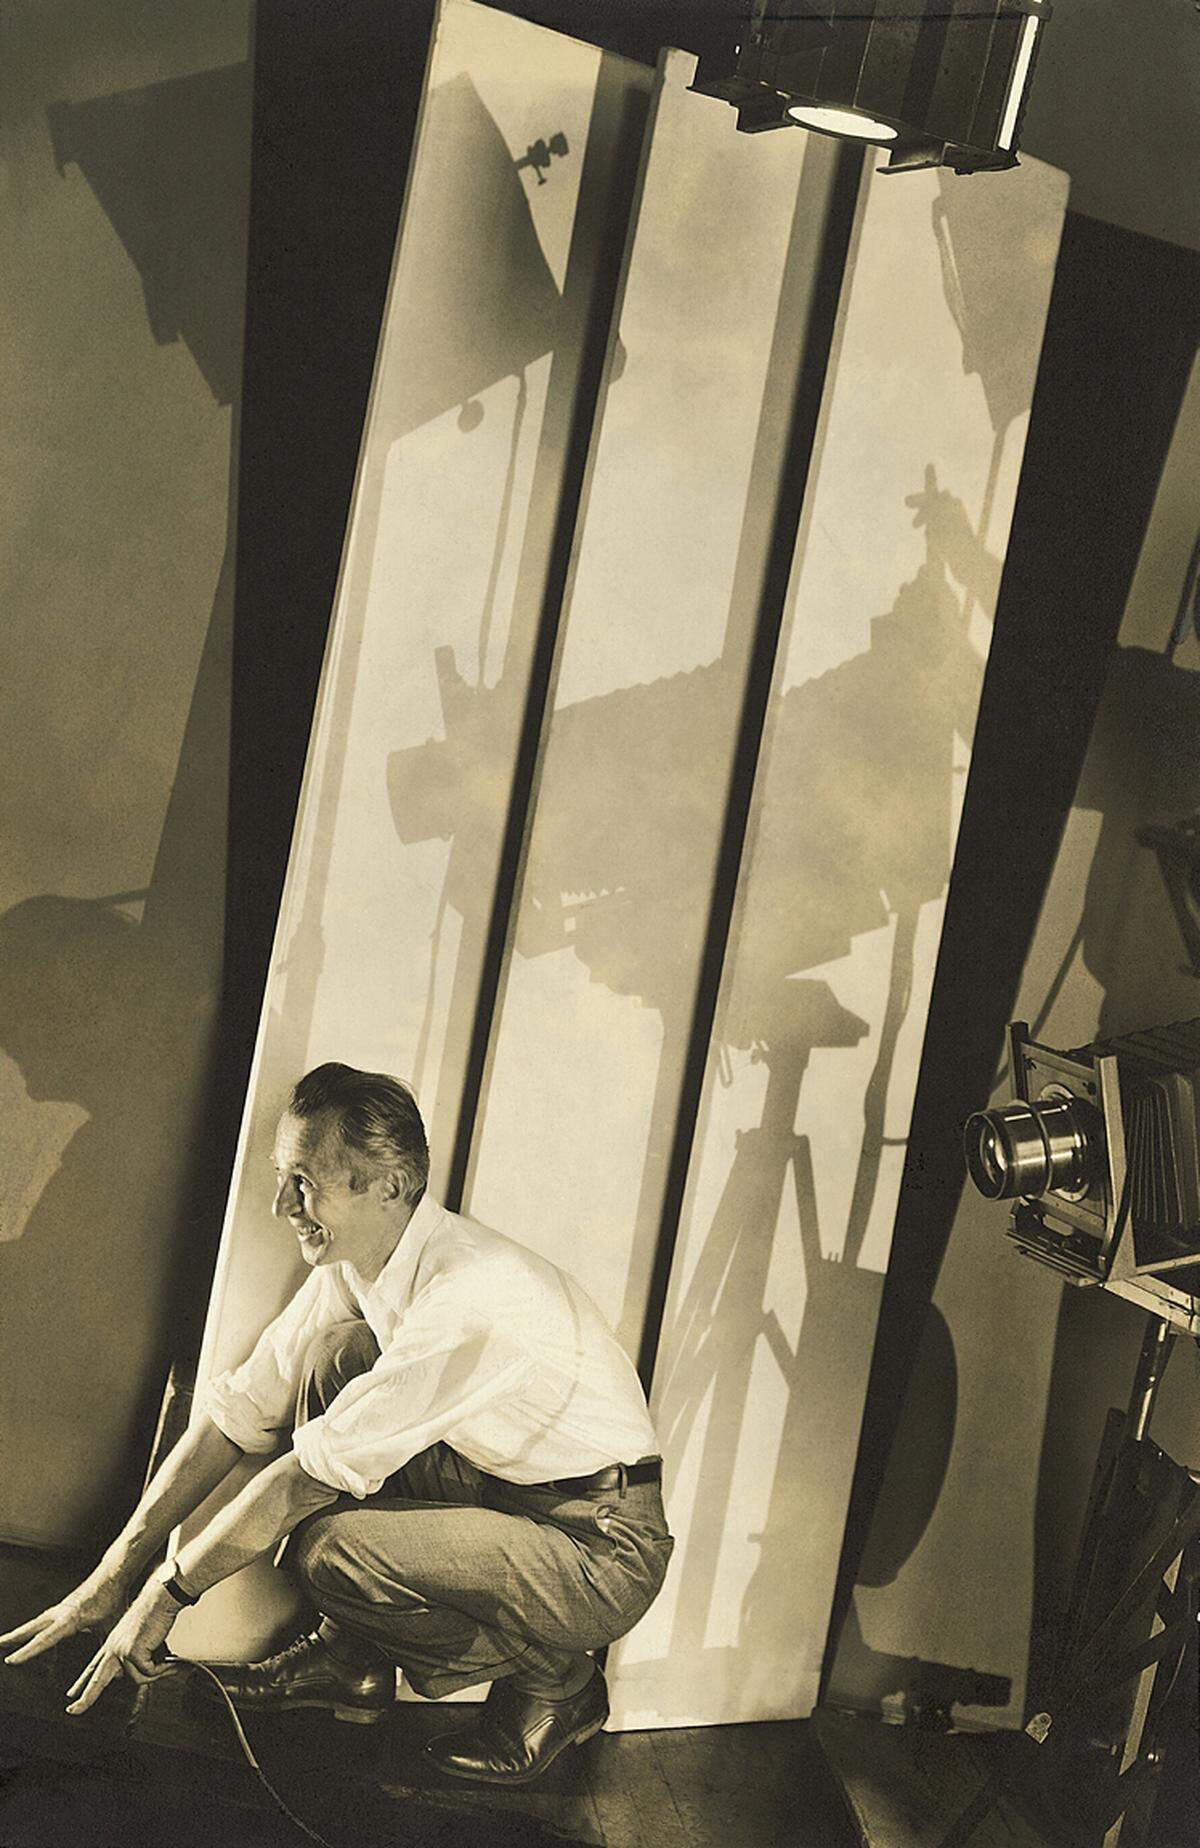 Steichen war der bestbezahlte Fotograf seiner Zeit. Dennoch habe er seine Fotos als Arbeitsdokumente und nicht als Kunstwerke betrachtet, sagte Ewing. "Er hat nie daran gedacht, sie in Rahmen zu fassen und an die Wand zu hängen. Vielleicht wäre er auch mit dieser Ausstellung höchst unzufrieden."Edward Steichen: Selbstporträt mit fotografischer Ausrüstung, New York, 1929, Courtesy Condé Nast Archive